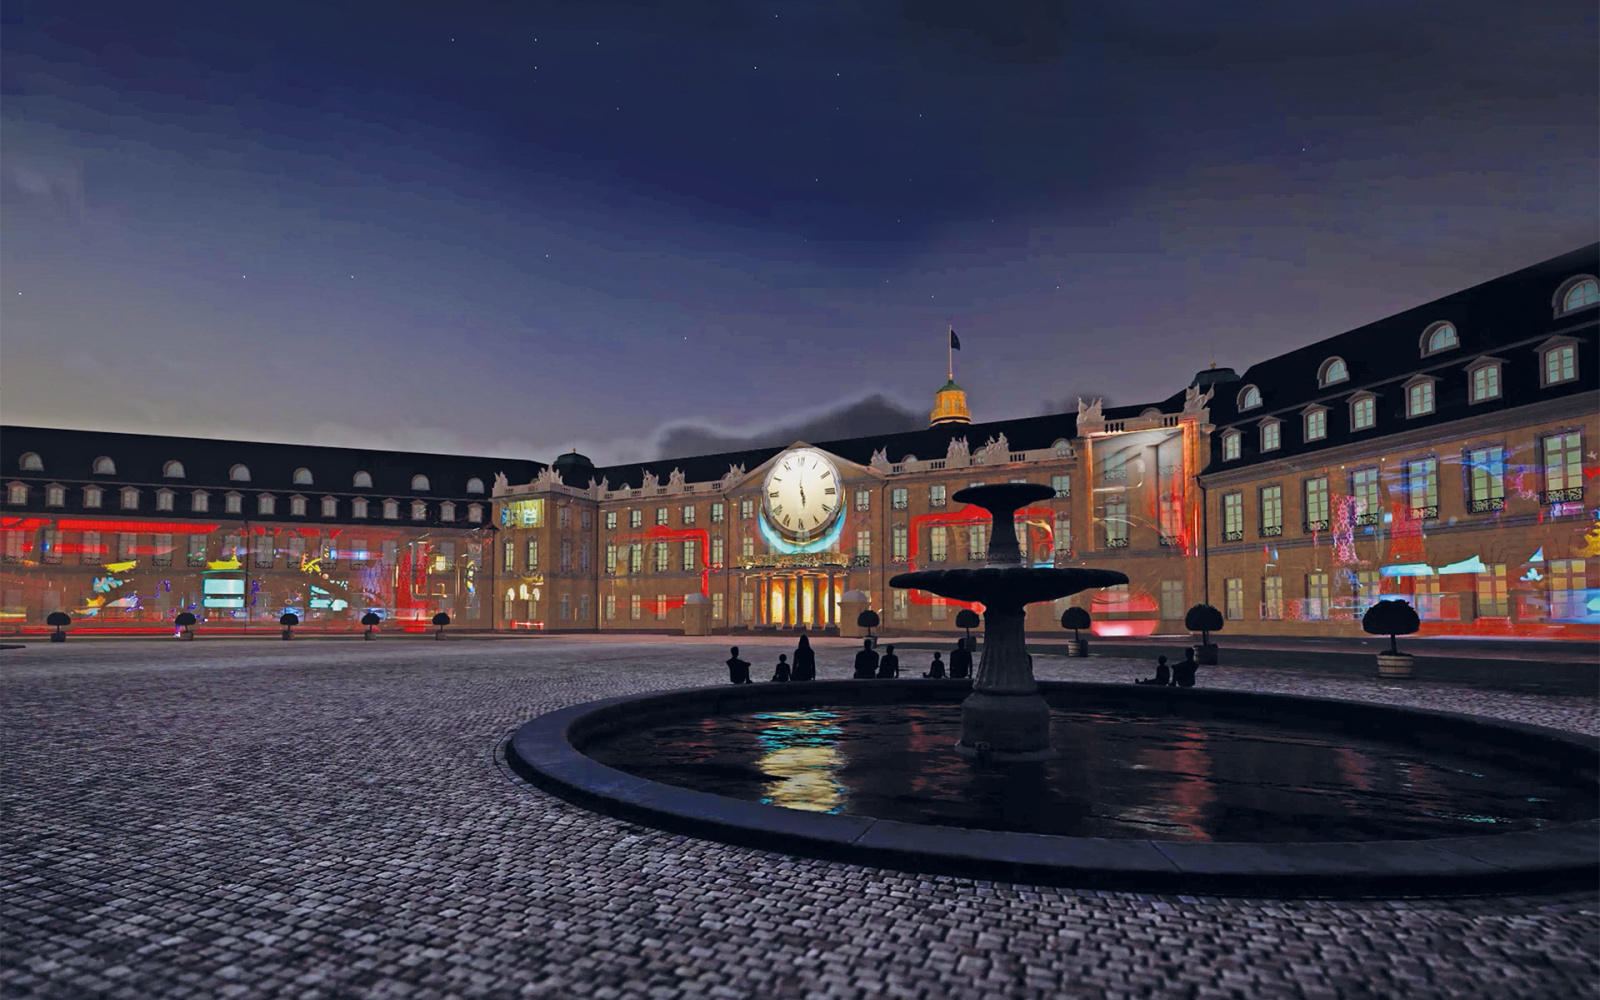 Ein virtuelles Bild des Karlsruher Schlosses, davor der Brunnen, es ist Abend, eine große Uhr ist auf das Schloss projiziert und es ist symmetrisch mit Farbenlinien beleuchtet.